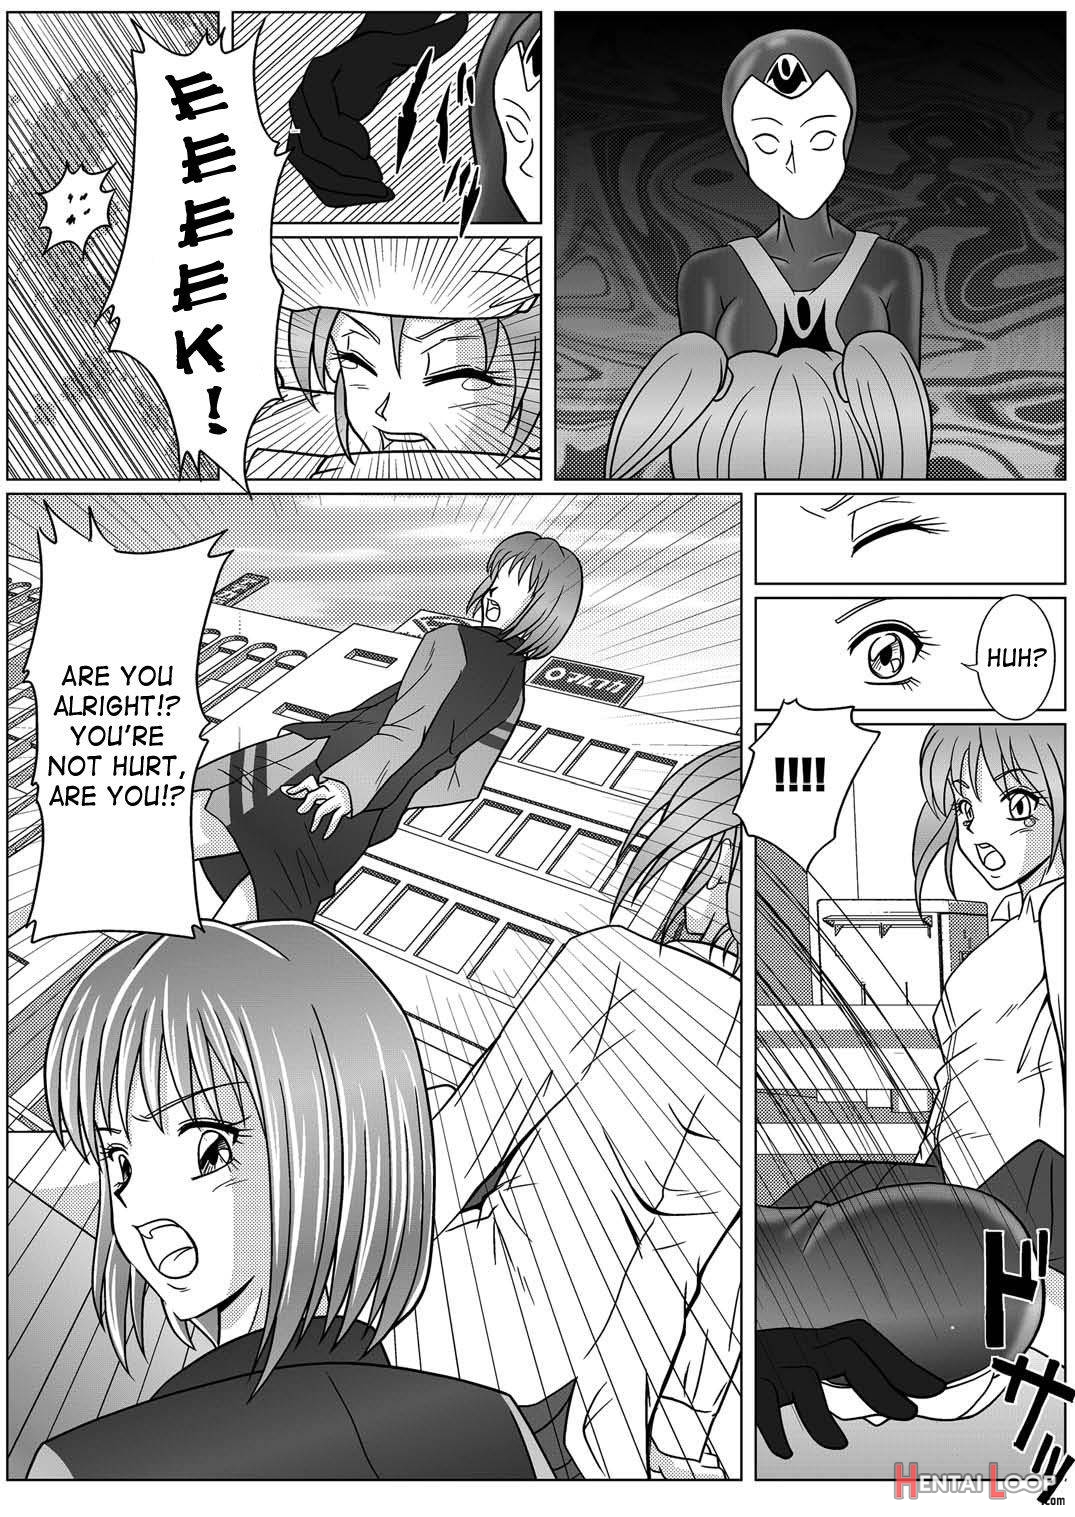 Tokubousentai Dinaranger ~Heroine Kairaku Sennou Keikaku~ Vol. 01 page 10